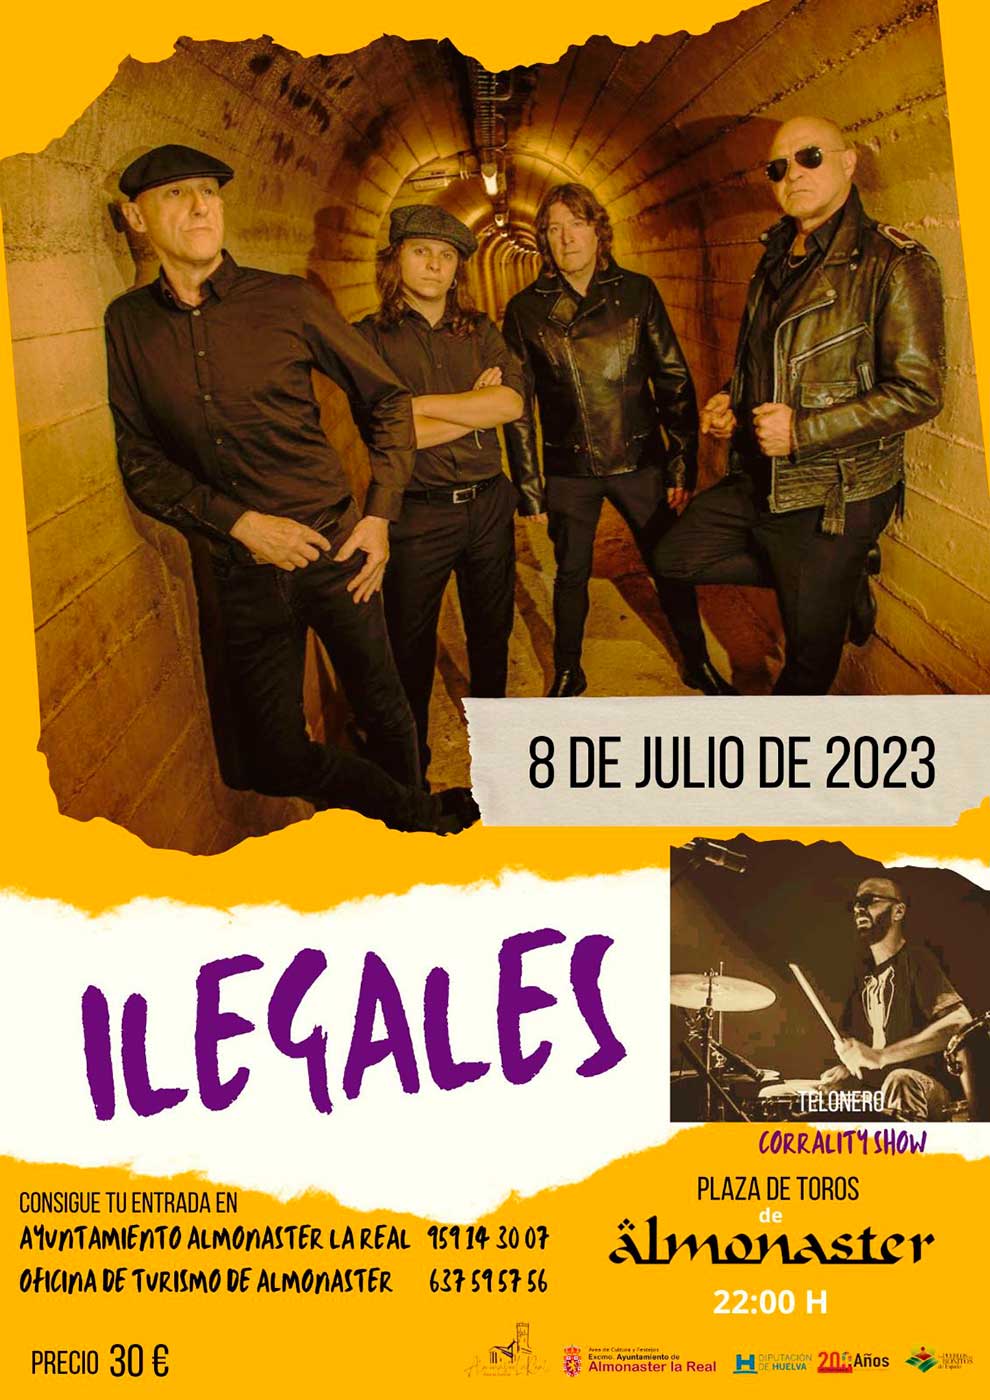 Ilegales en concierto 8 de julio 2023 corrality show Almonaster la Real Plaza de Toros